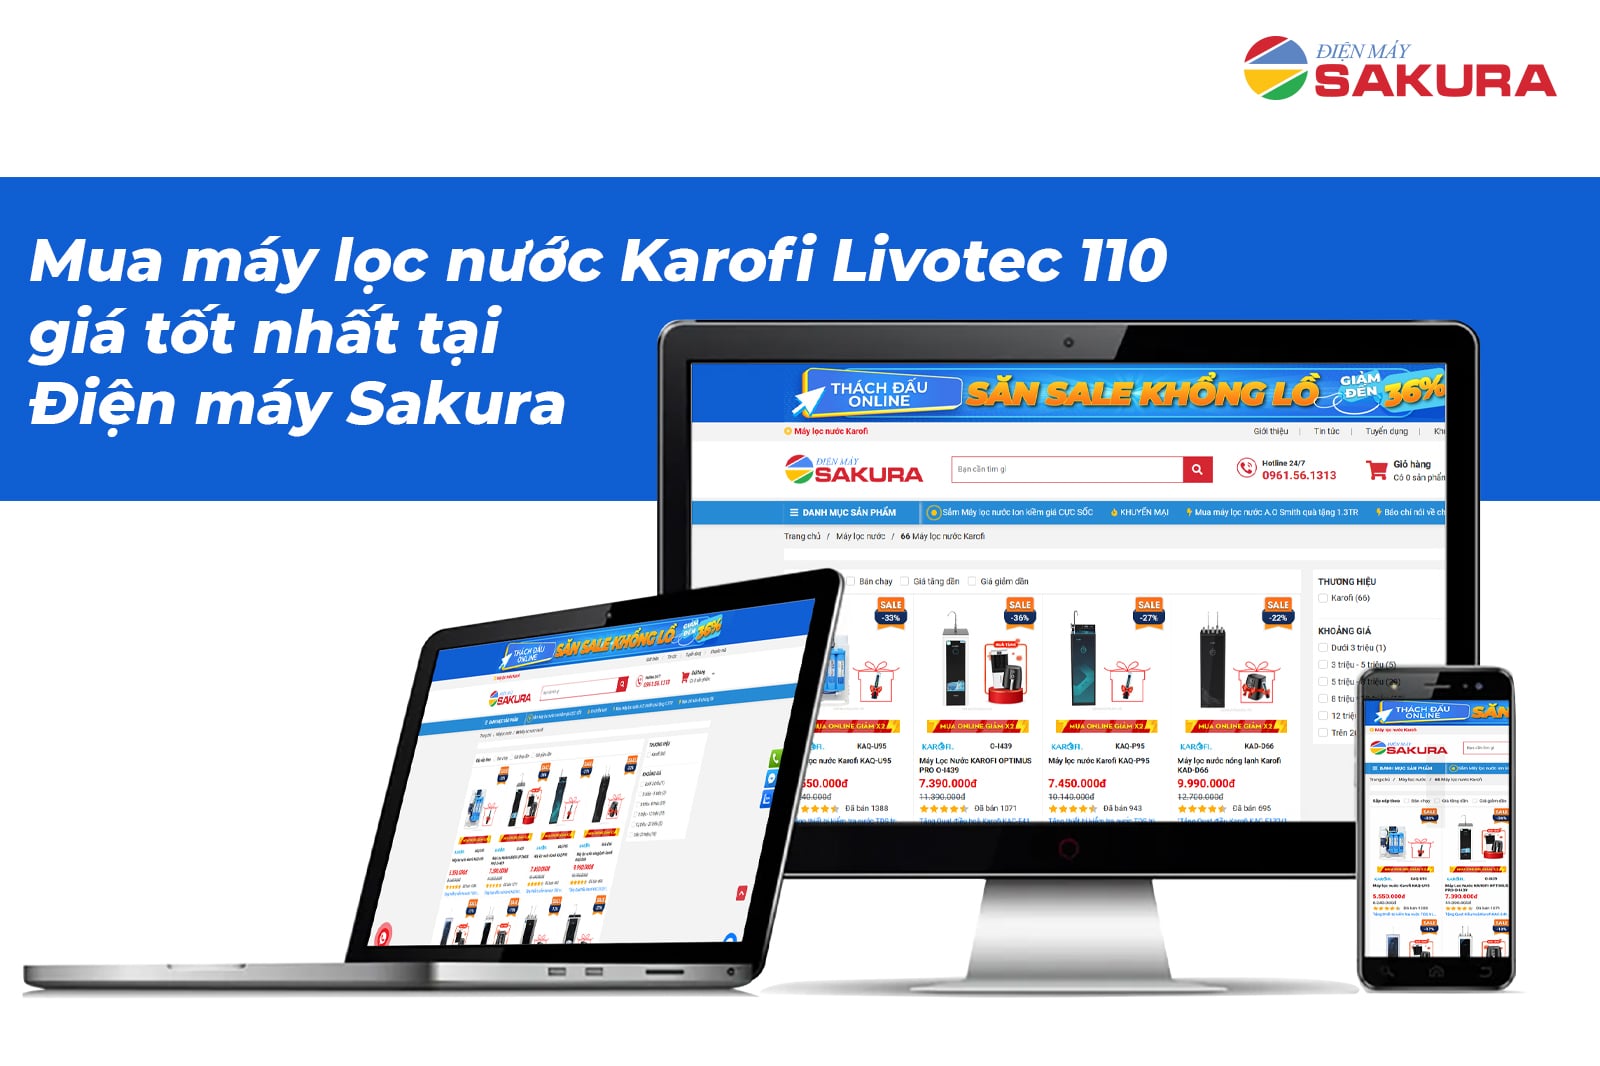 máy lọc nước Karofi Livotec 110 chính hãng đến Điện máy Sakura